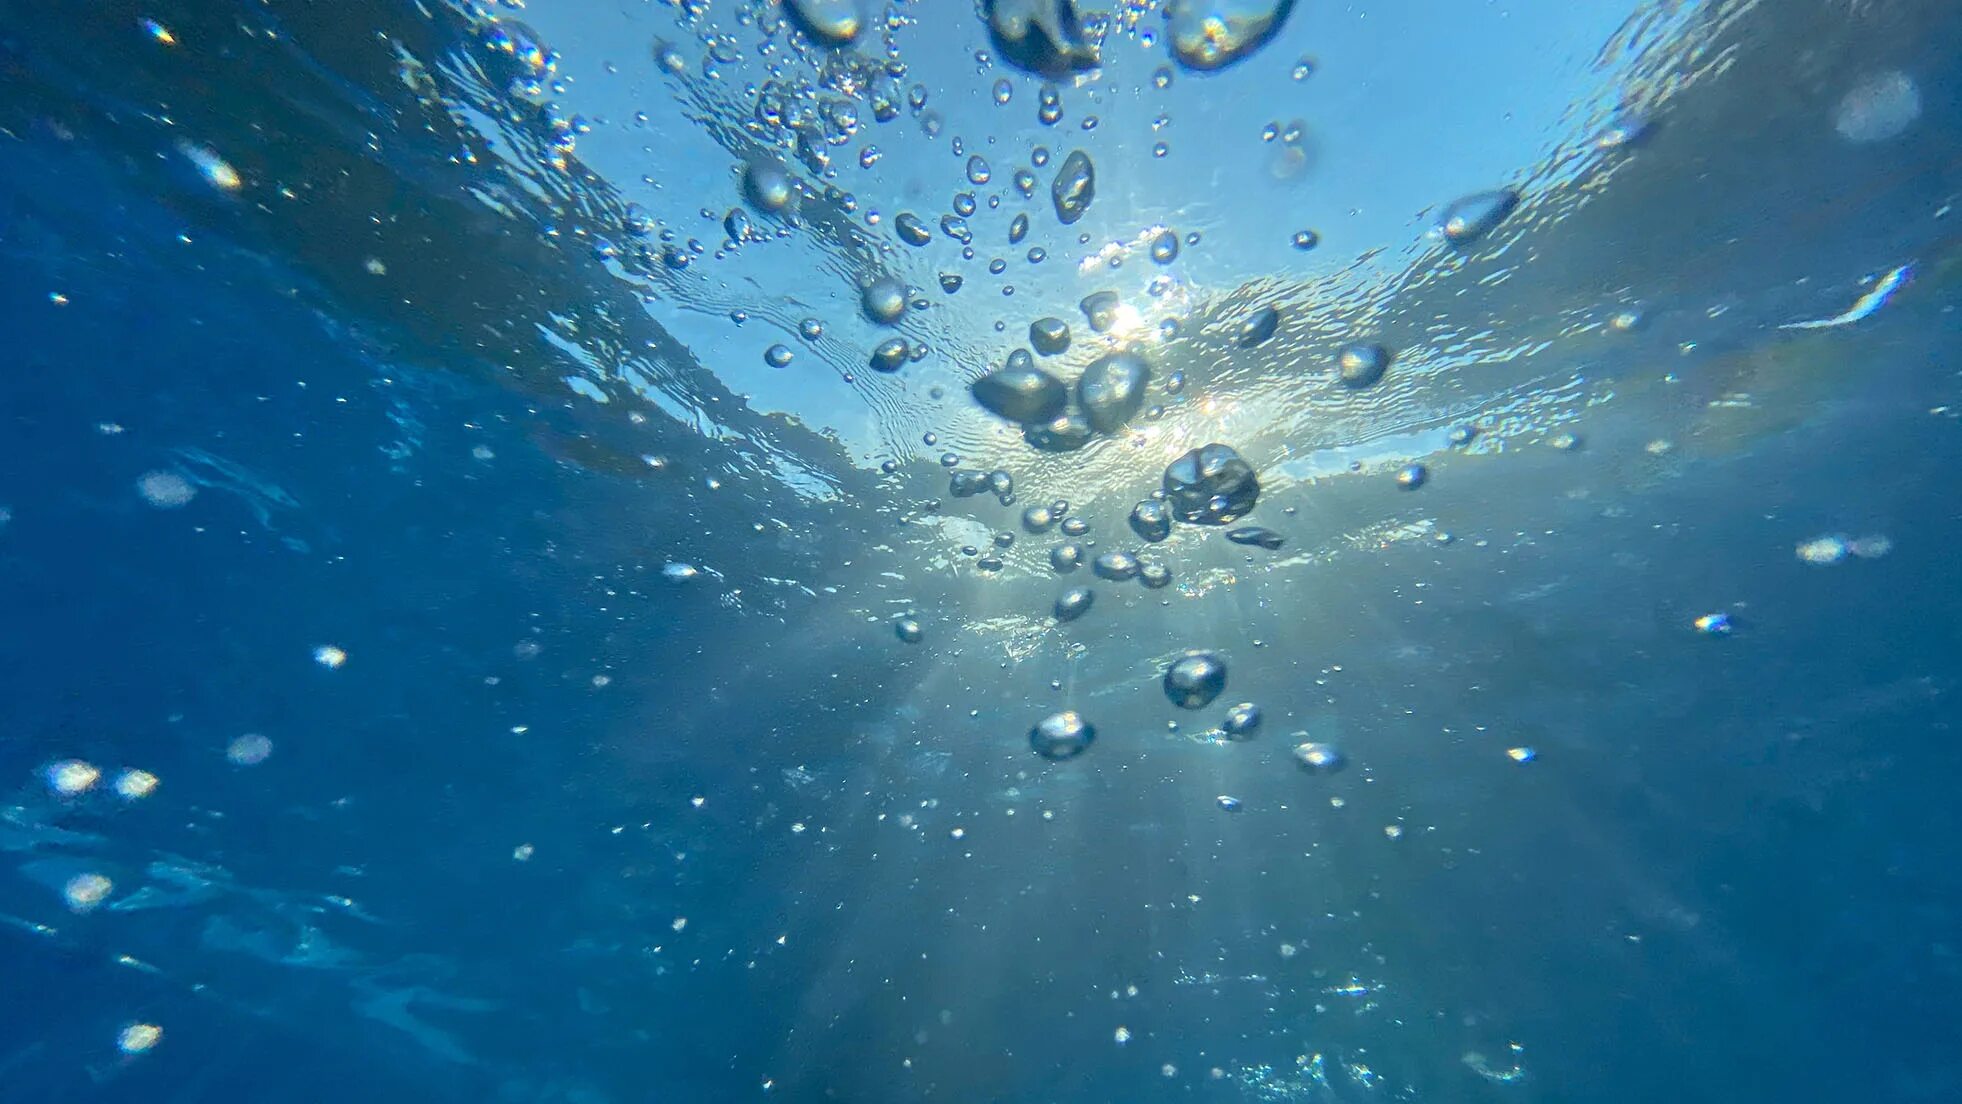 Кислород в воде. Пузырьки кислорода. Пузыри в воде. Пузыри воздуха под водой.